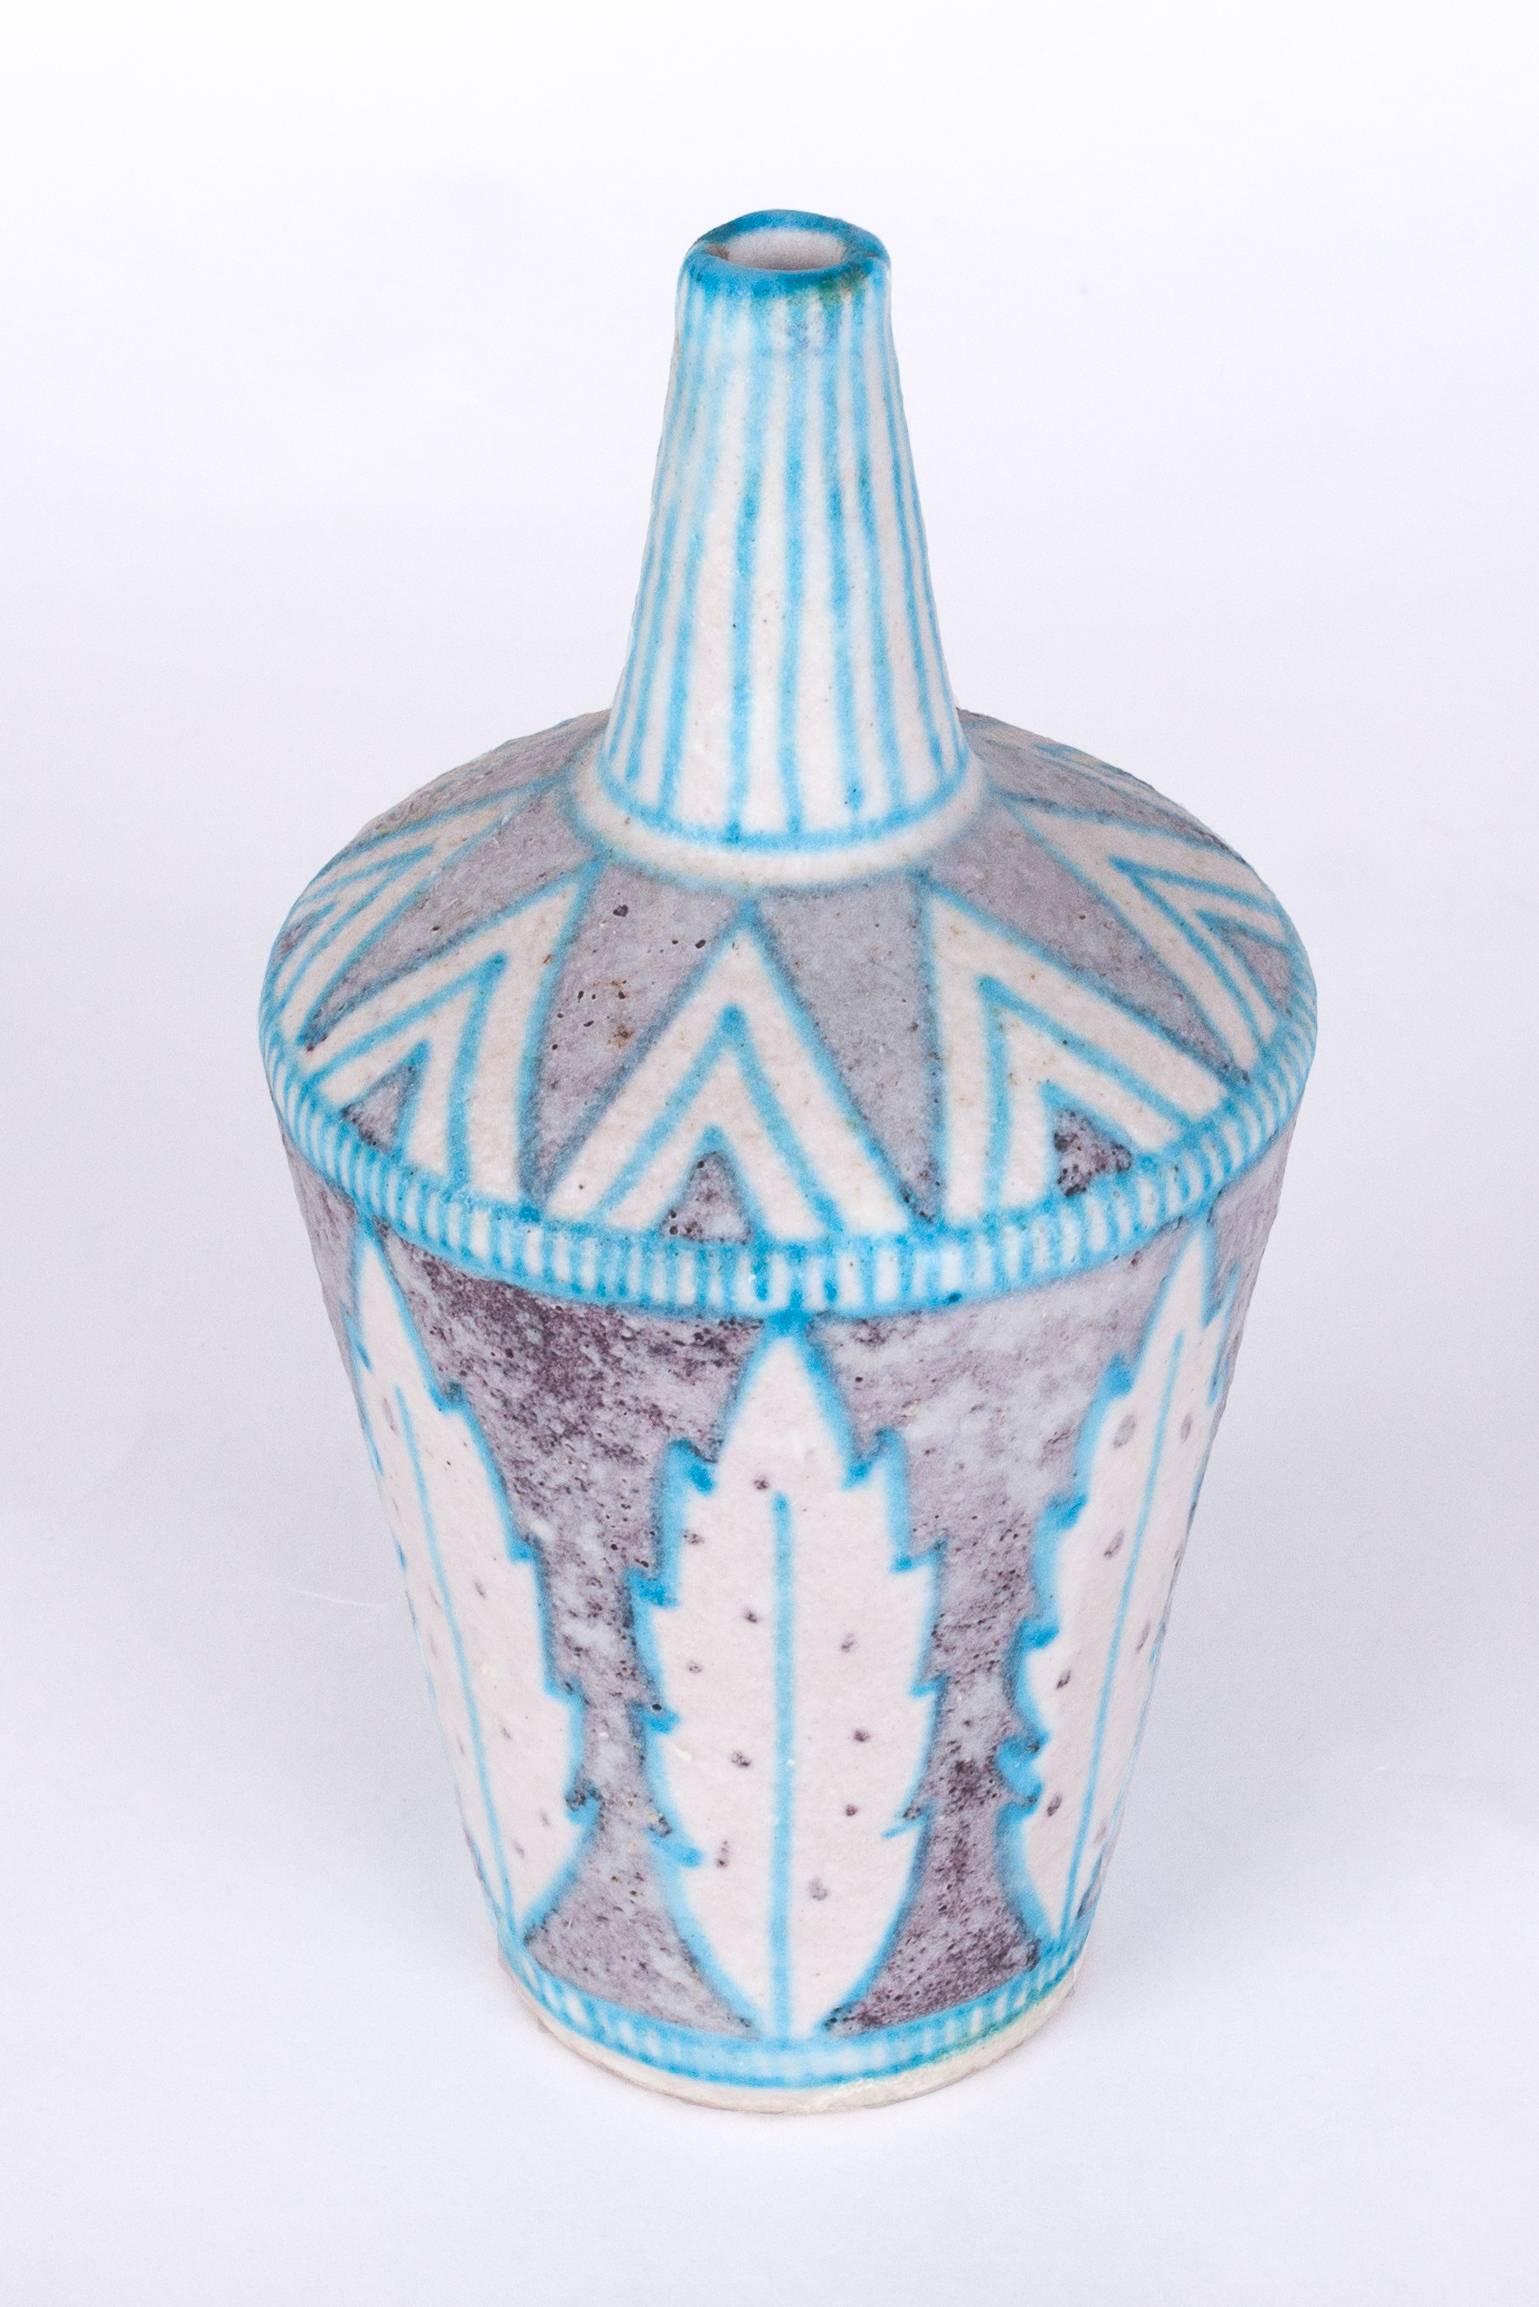 Joli vase en céramique émaillée C.A.S. Vietri dans le style de Guido Gambone, avec un gracieux motif de feuilles et de triangles imbriqués. Réalisé à la main avec une glaçure salée bleue, brune et blanche.

Signé au verso 